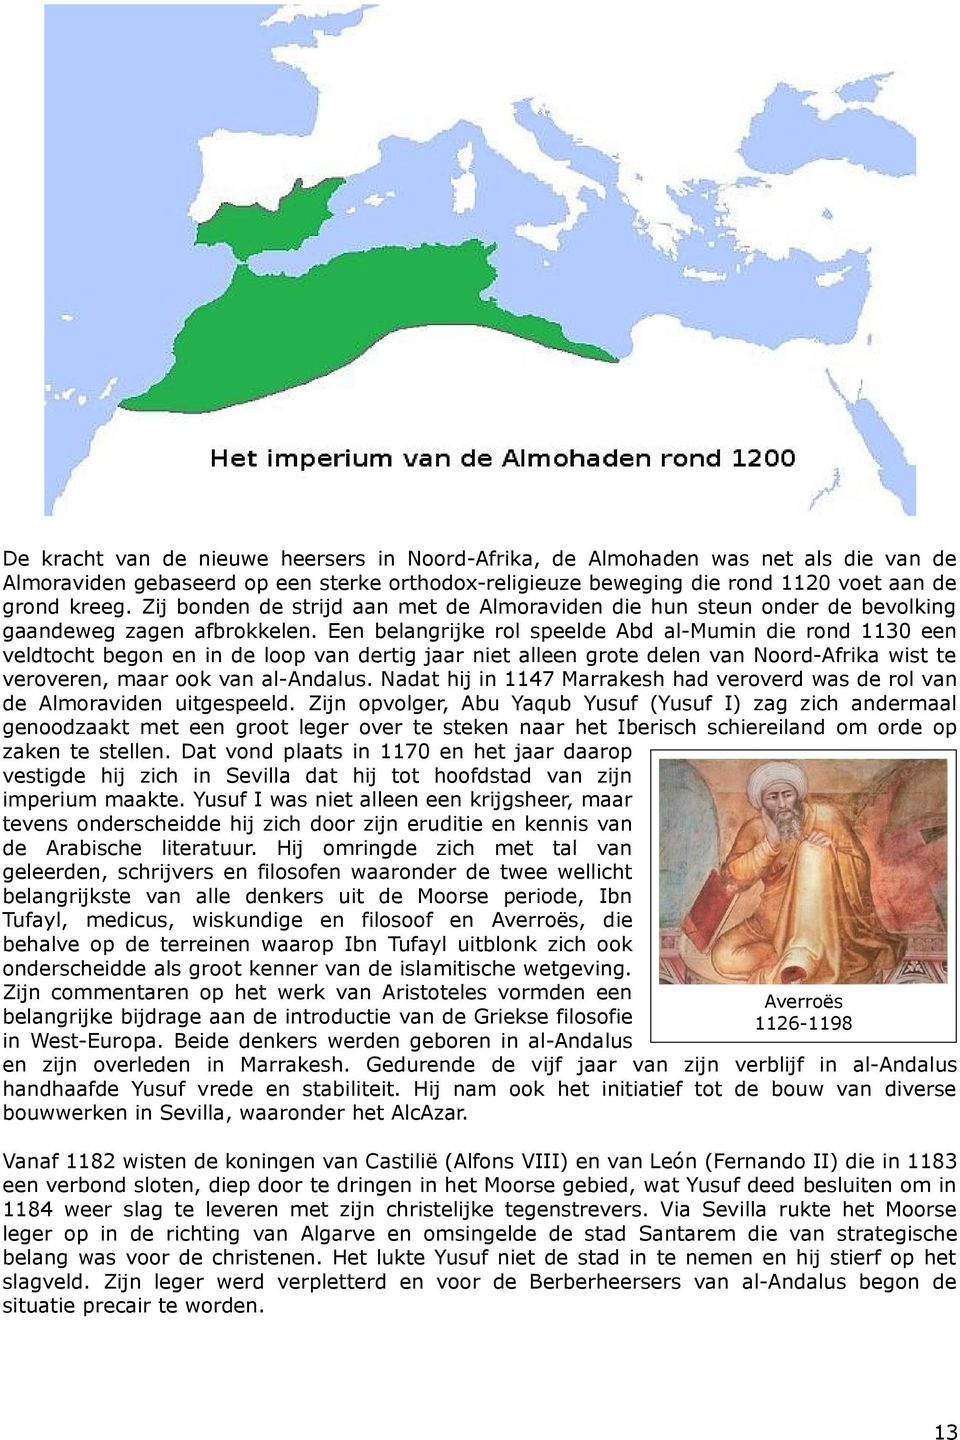 Een belangrijke rol speelde Abd al-mumin die rond 1130 een veldtocht begon en in de loop van dertig jaar niet alleen grote delen van Noord-Afrika wist te veroveren, maar ook van al-andalus.